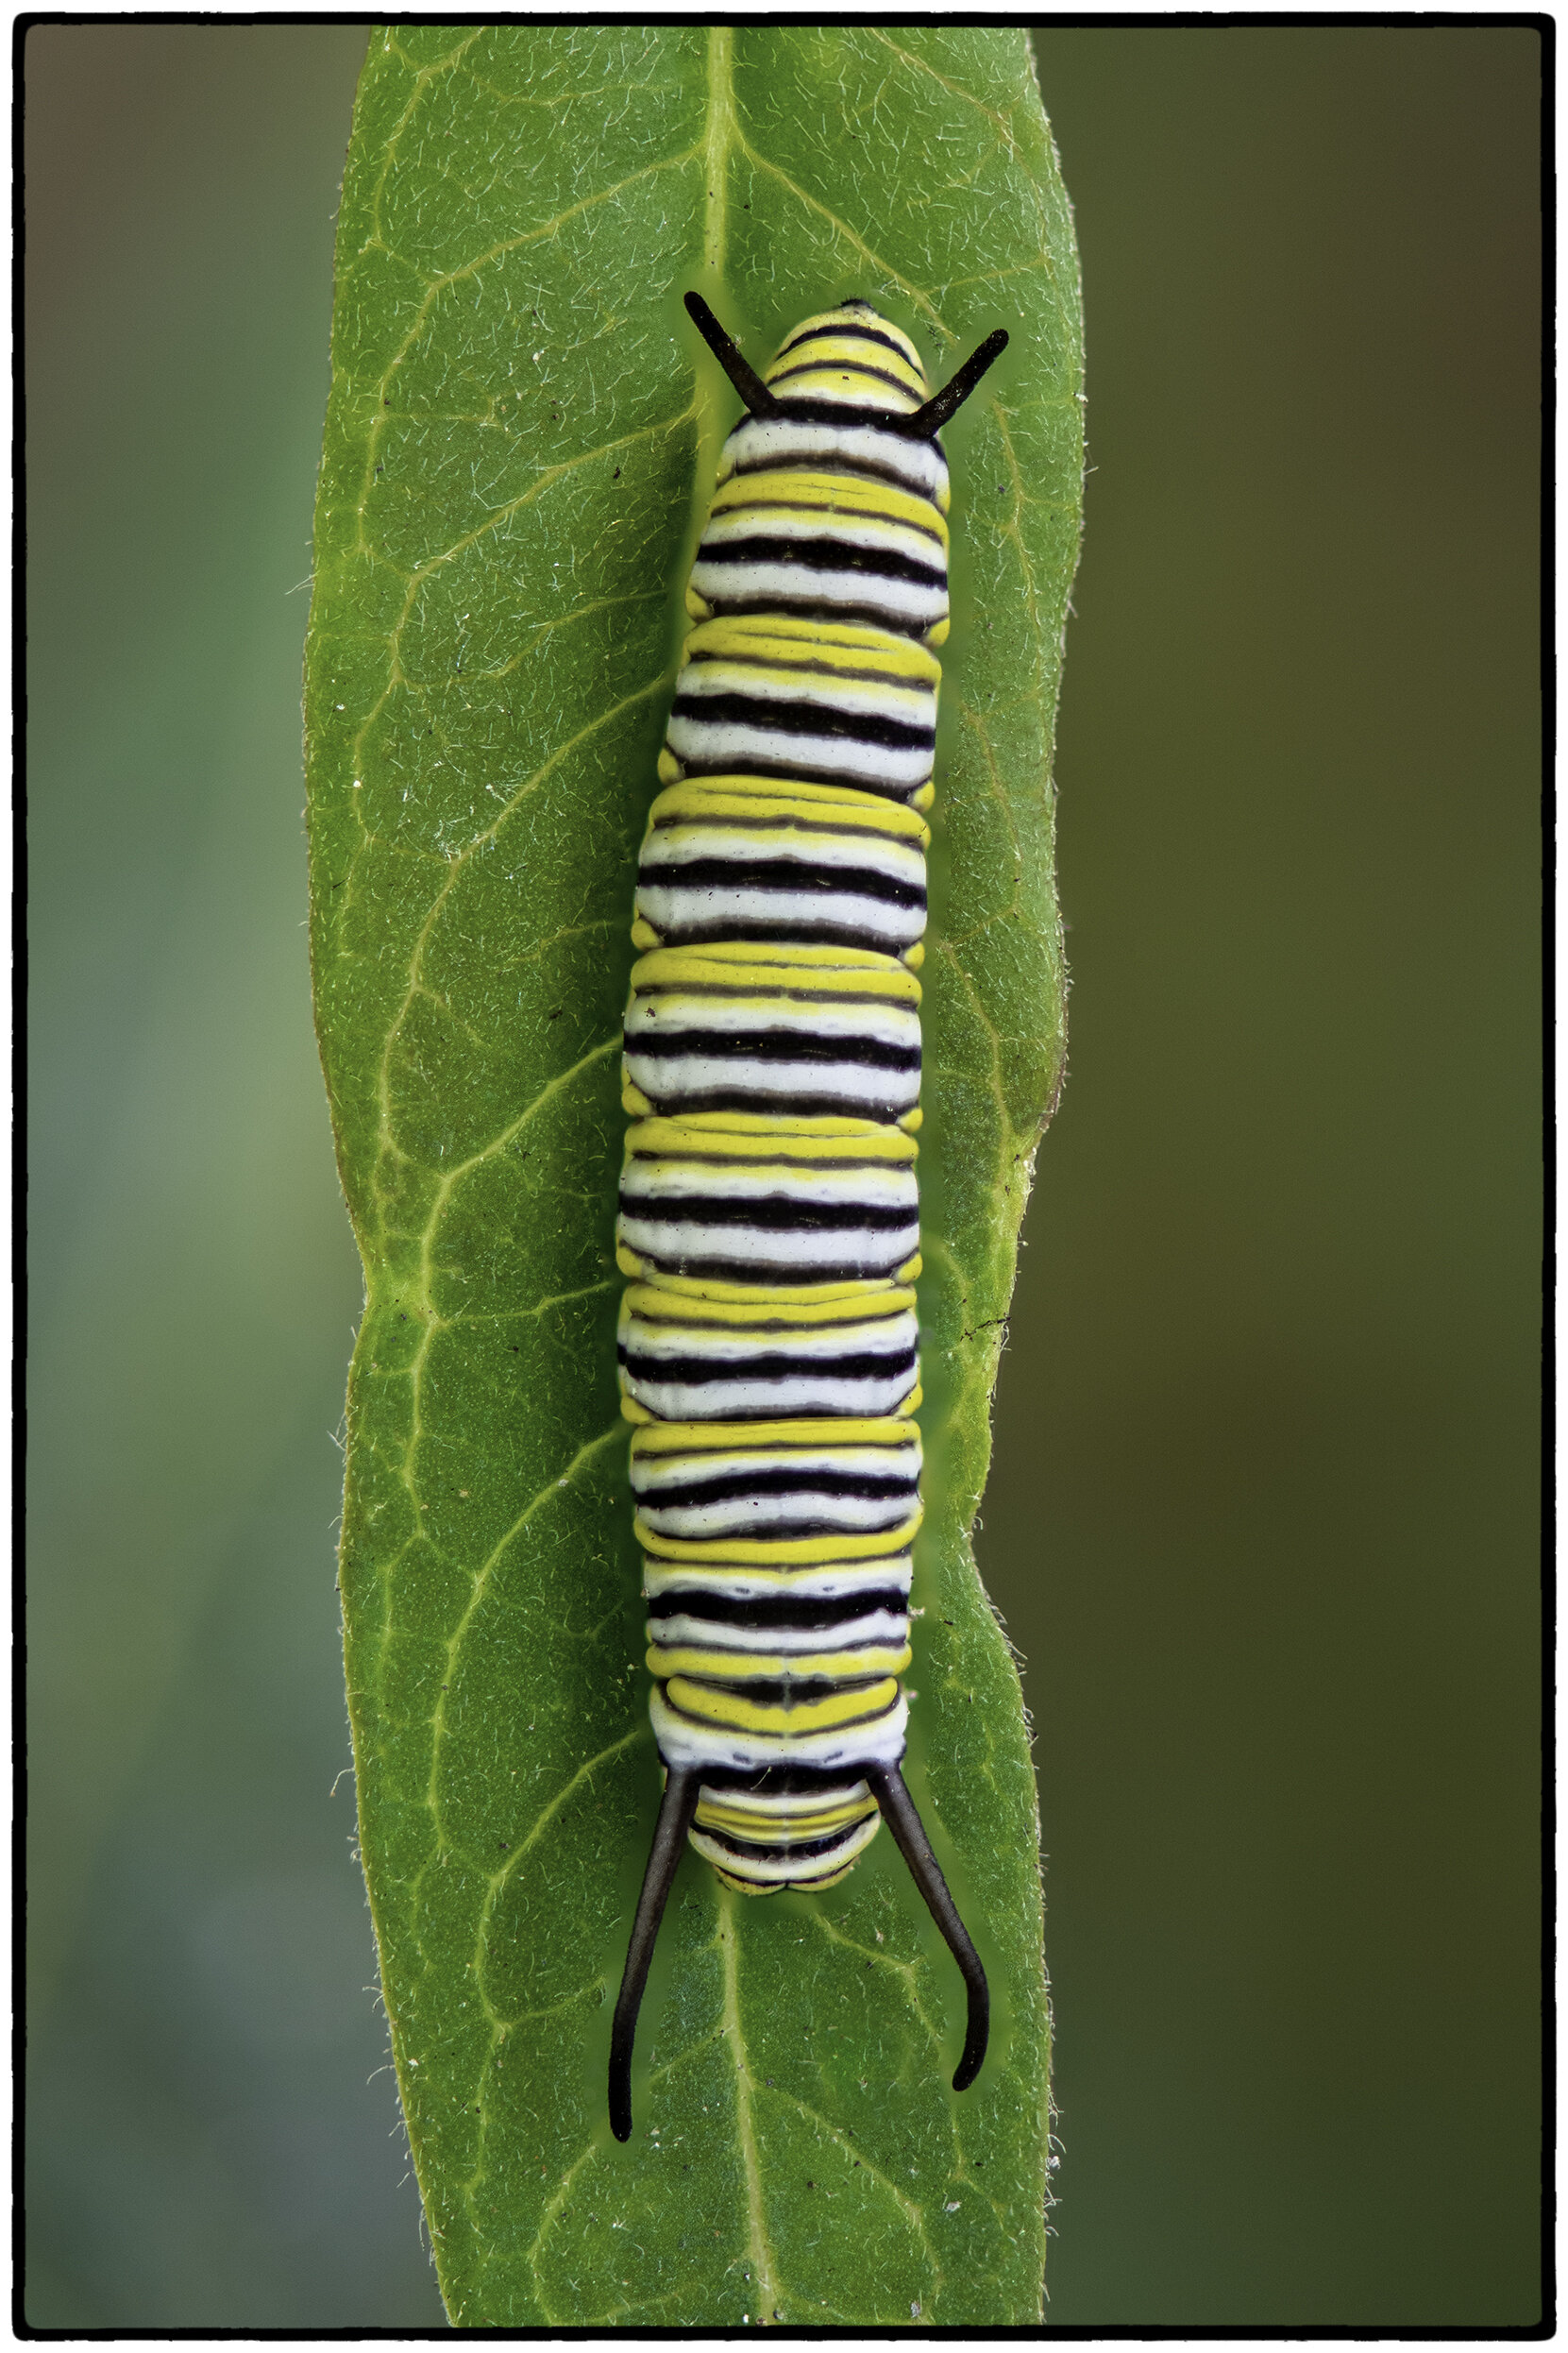 Caterpillar, Kensington